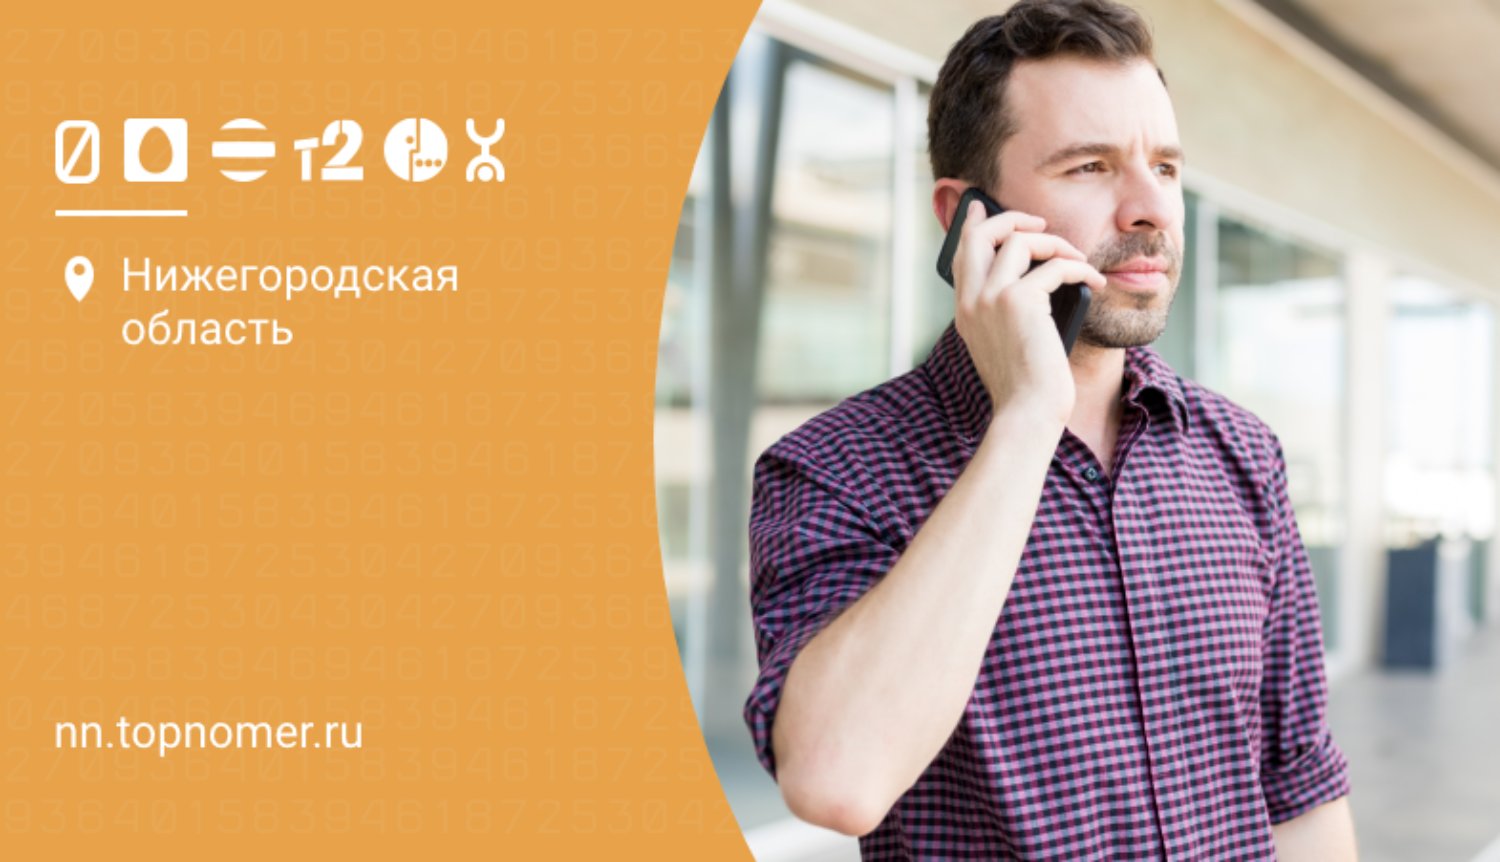 Тарифы для телефона до 200 рублей в месяц